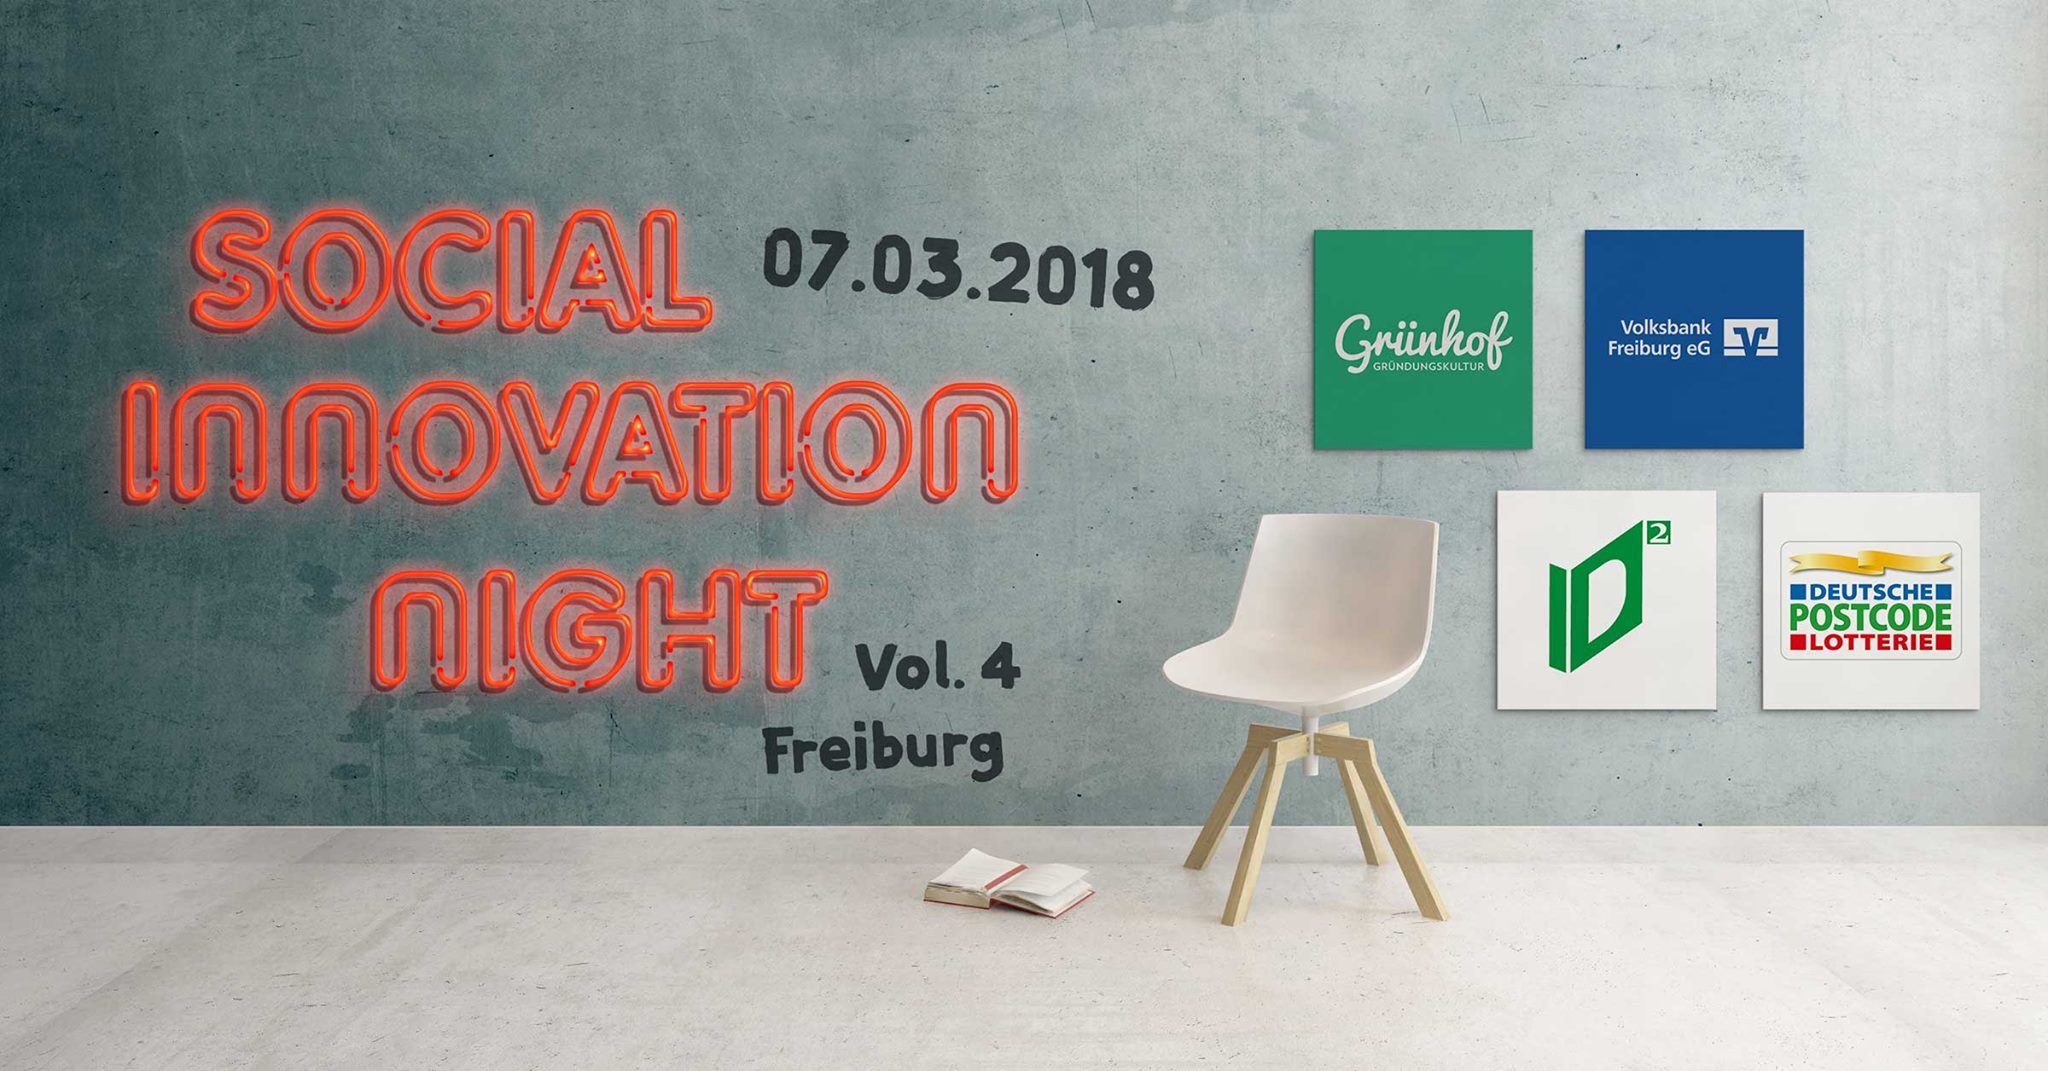 Social Innovation Night